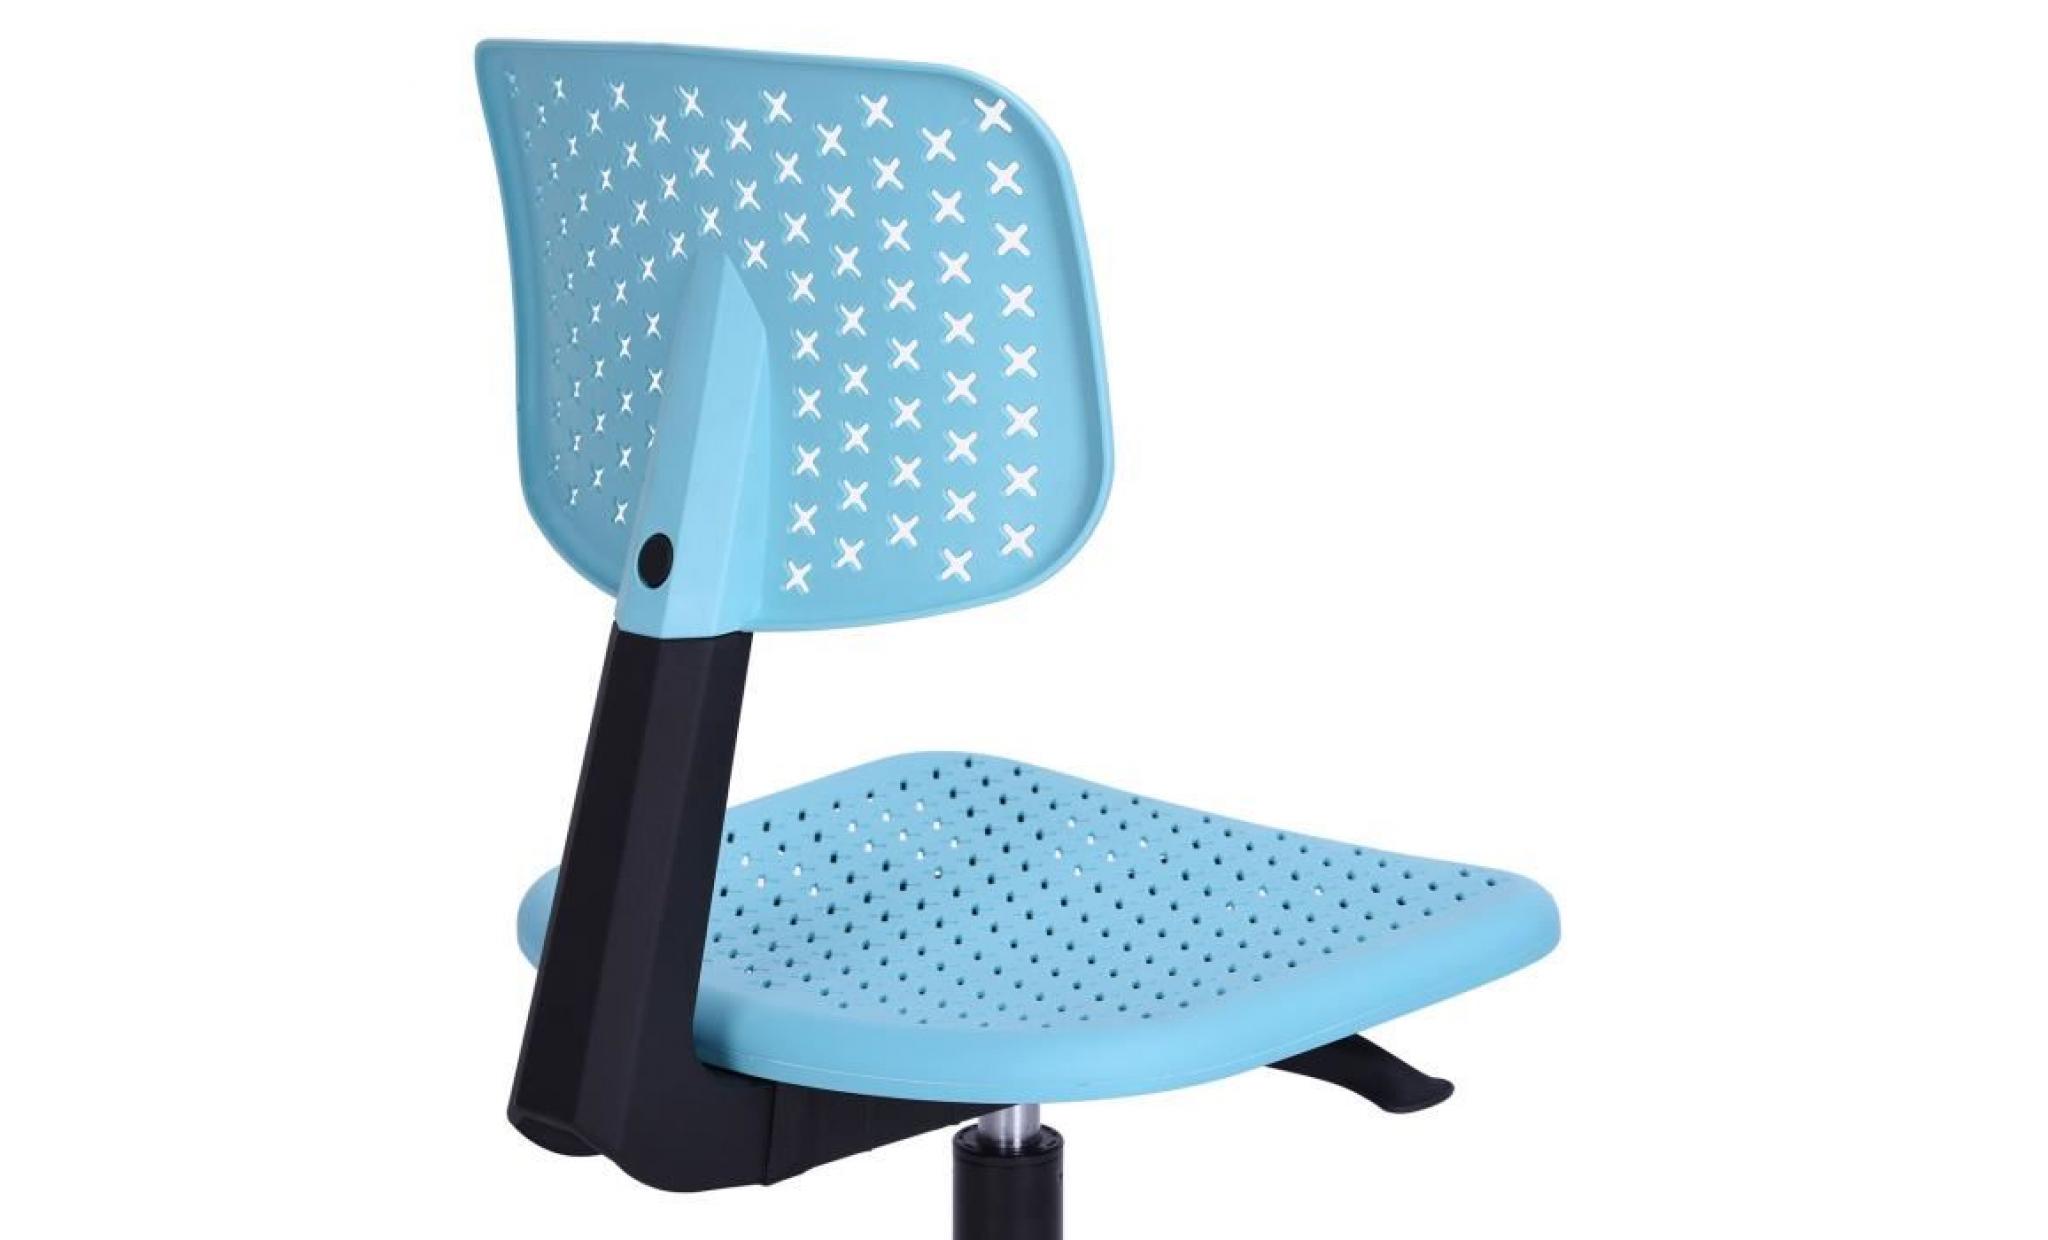 v.l.v chaise de bureau pour enfant plastique turquoise ajustable avec roulettes pas cher